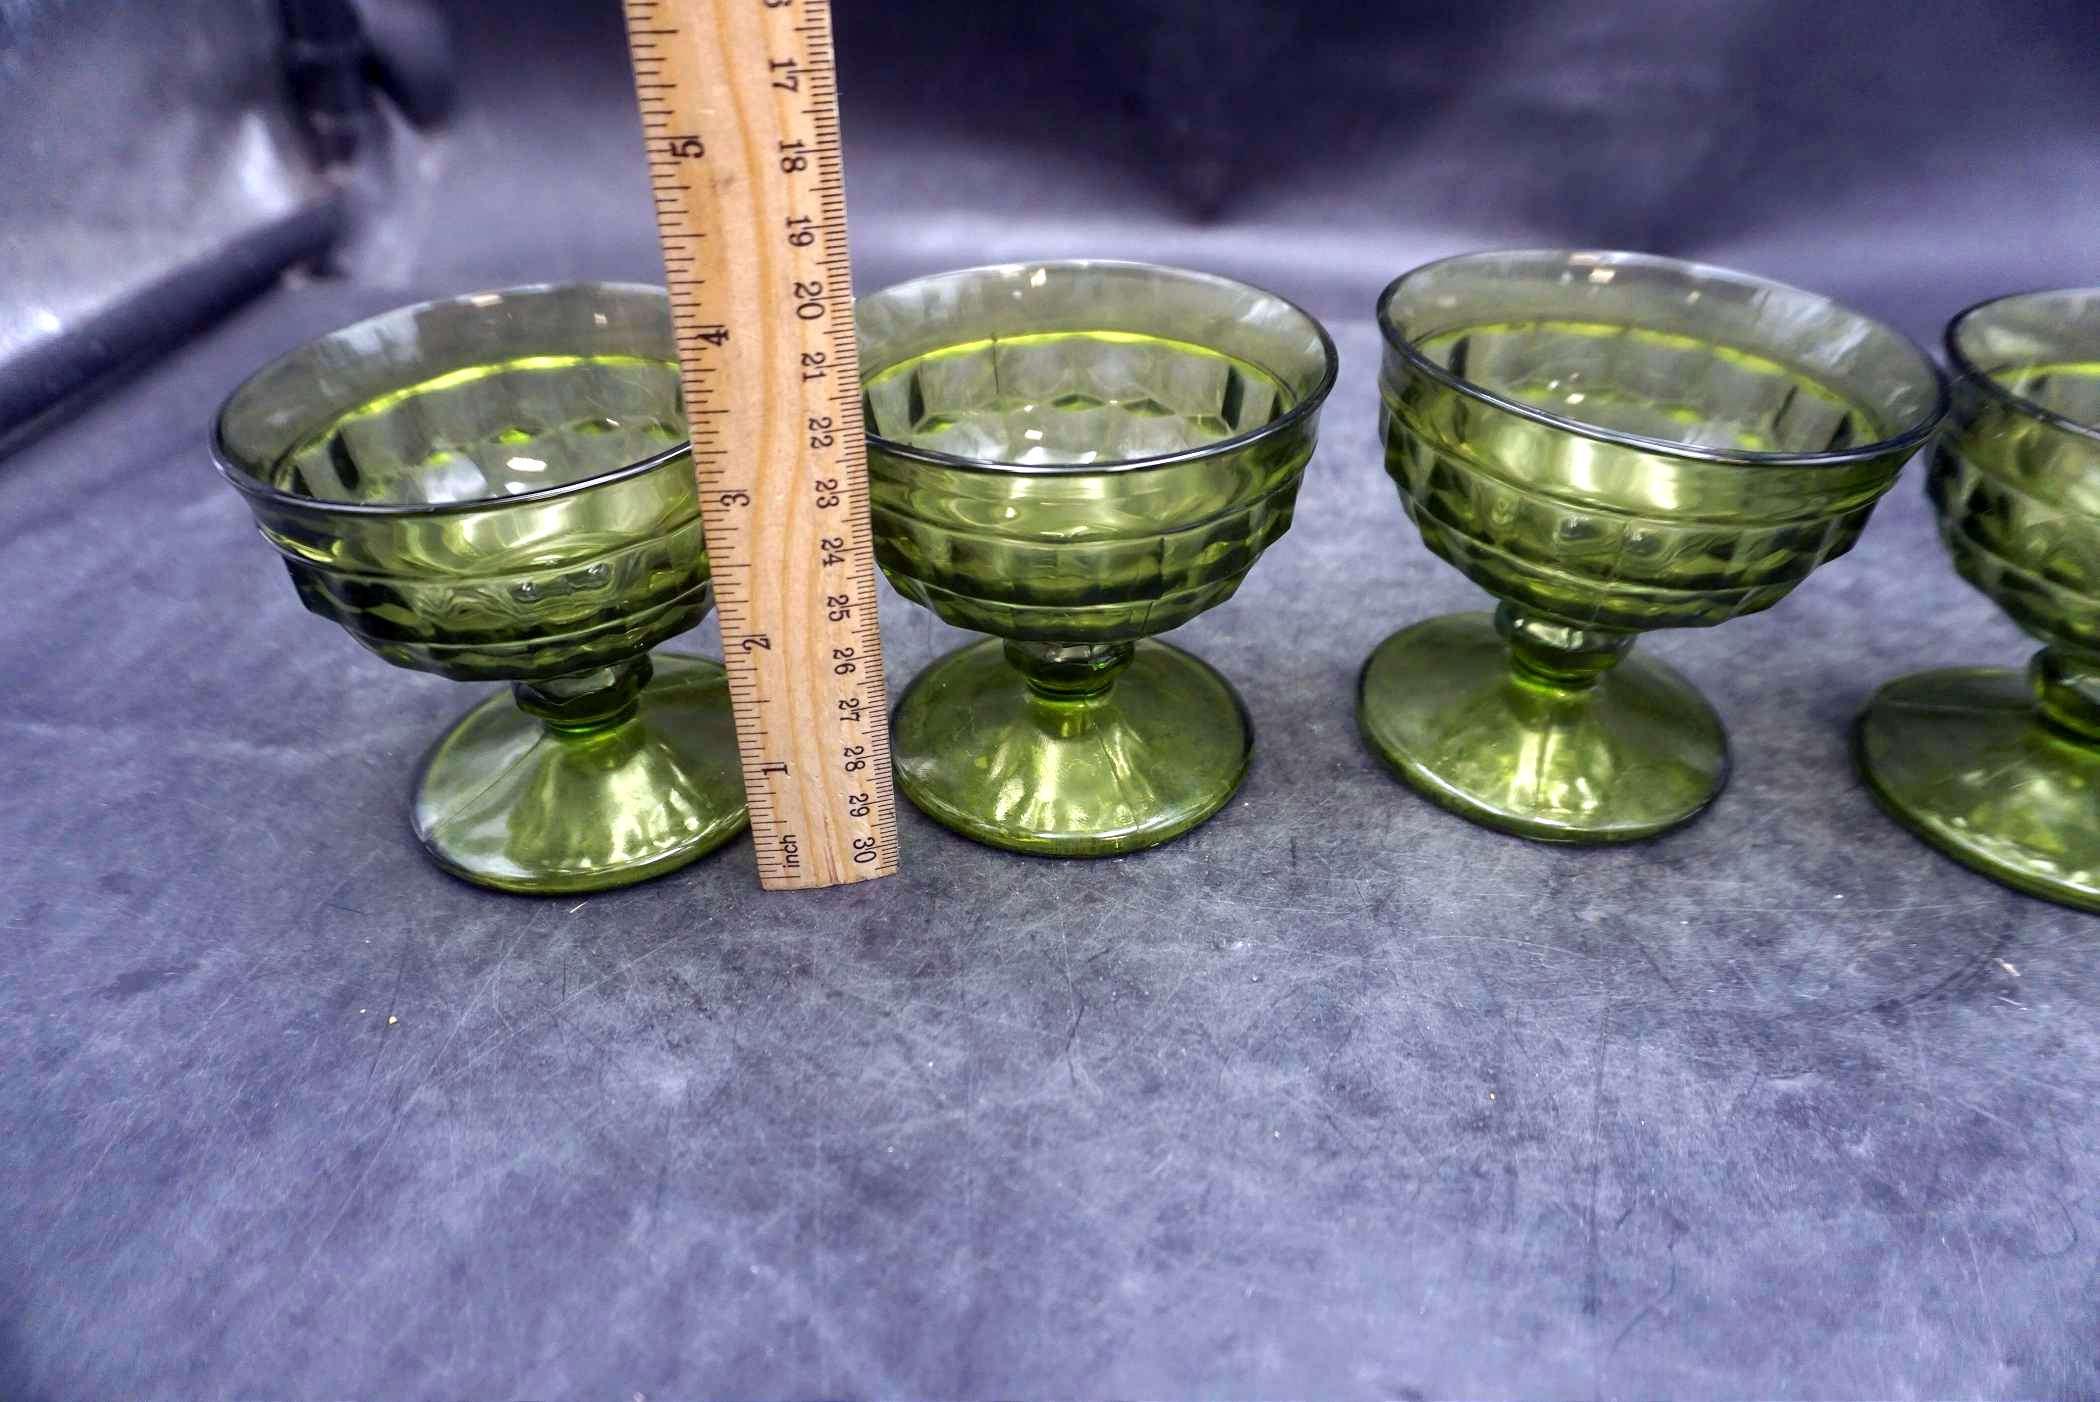 4 - Green Glass Dessert Cups